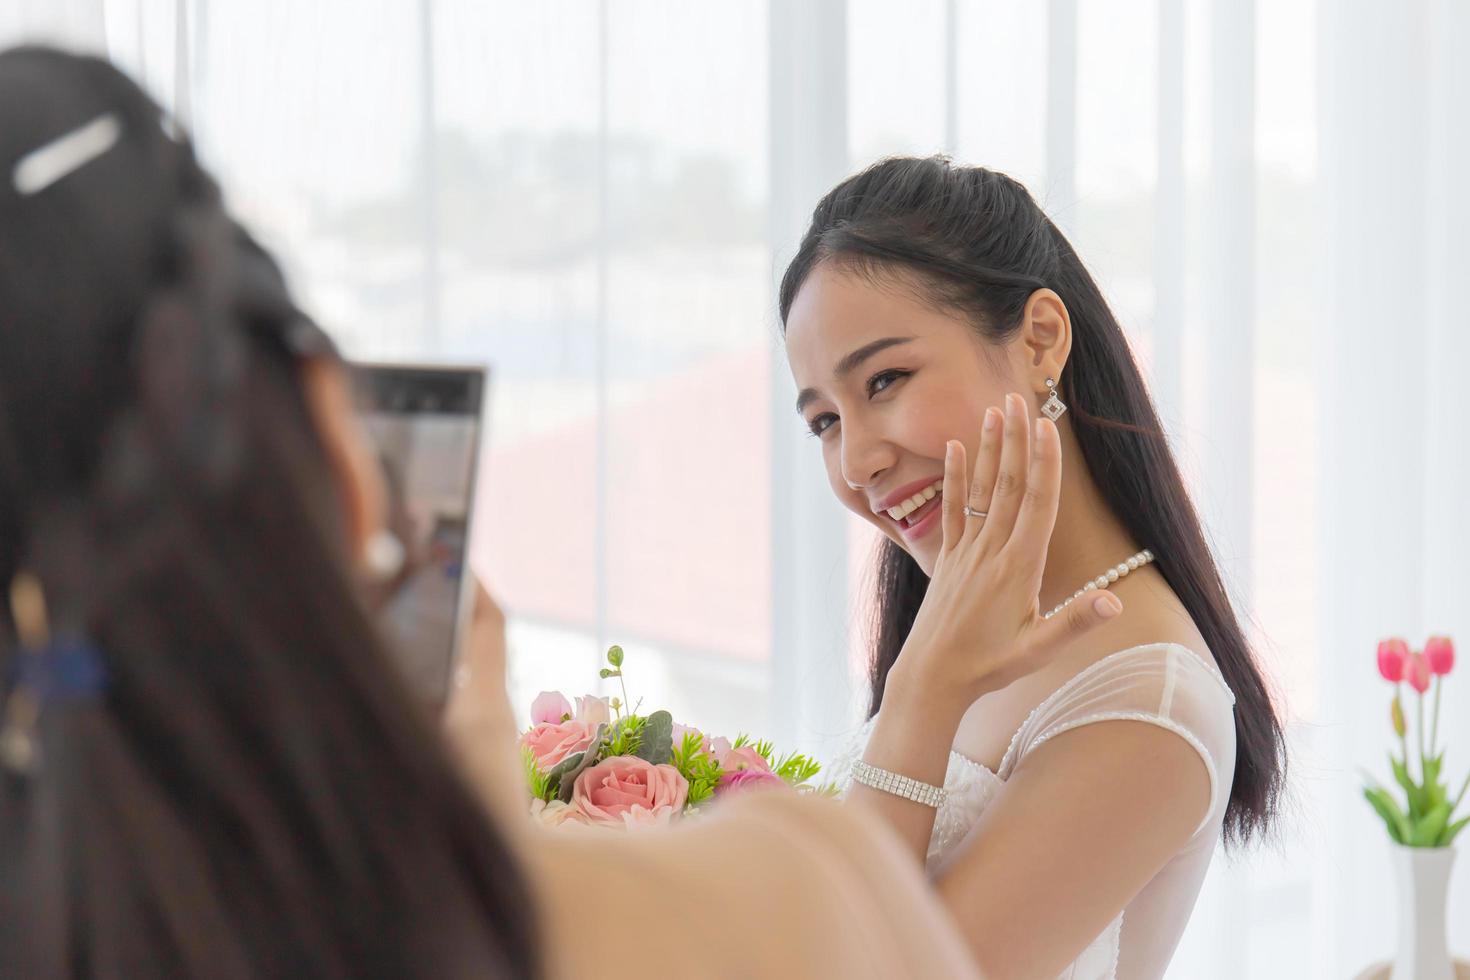 de vriendin van de bruid gebruikt een smartphone om foto's te maken van een Aziatische bruid in een trouwjurk die haar linker diamanten ring laat zien in de kleedkamer met een schattige, heldere glimlach. foto